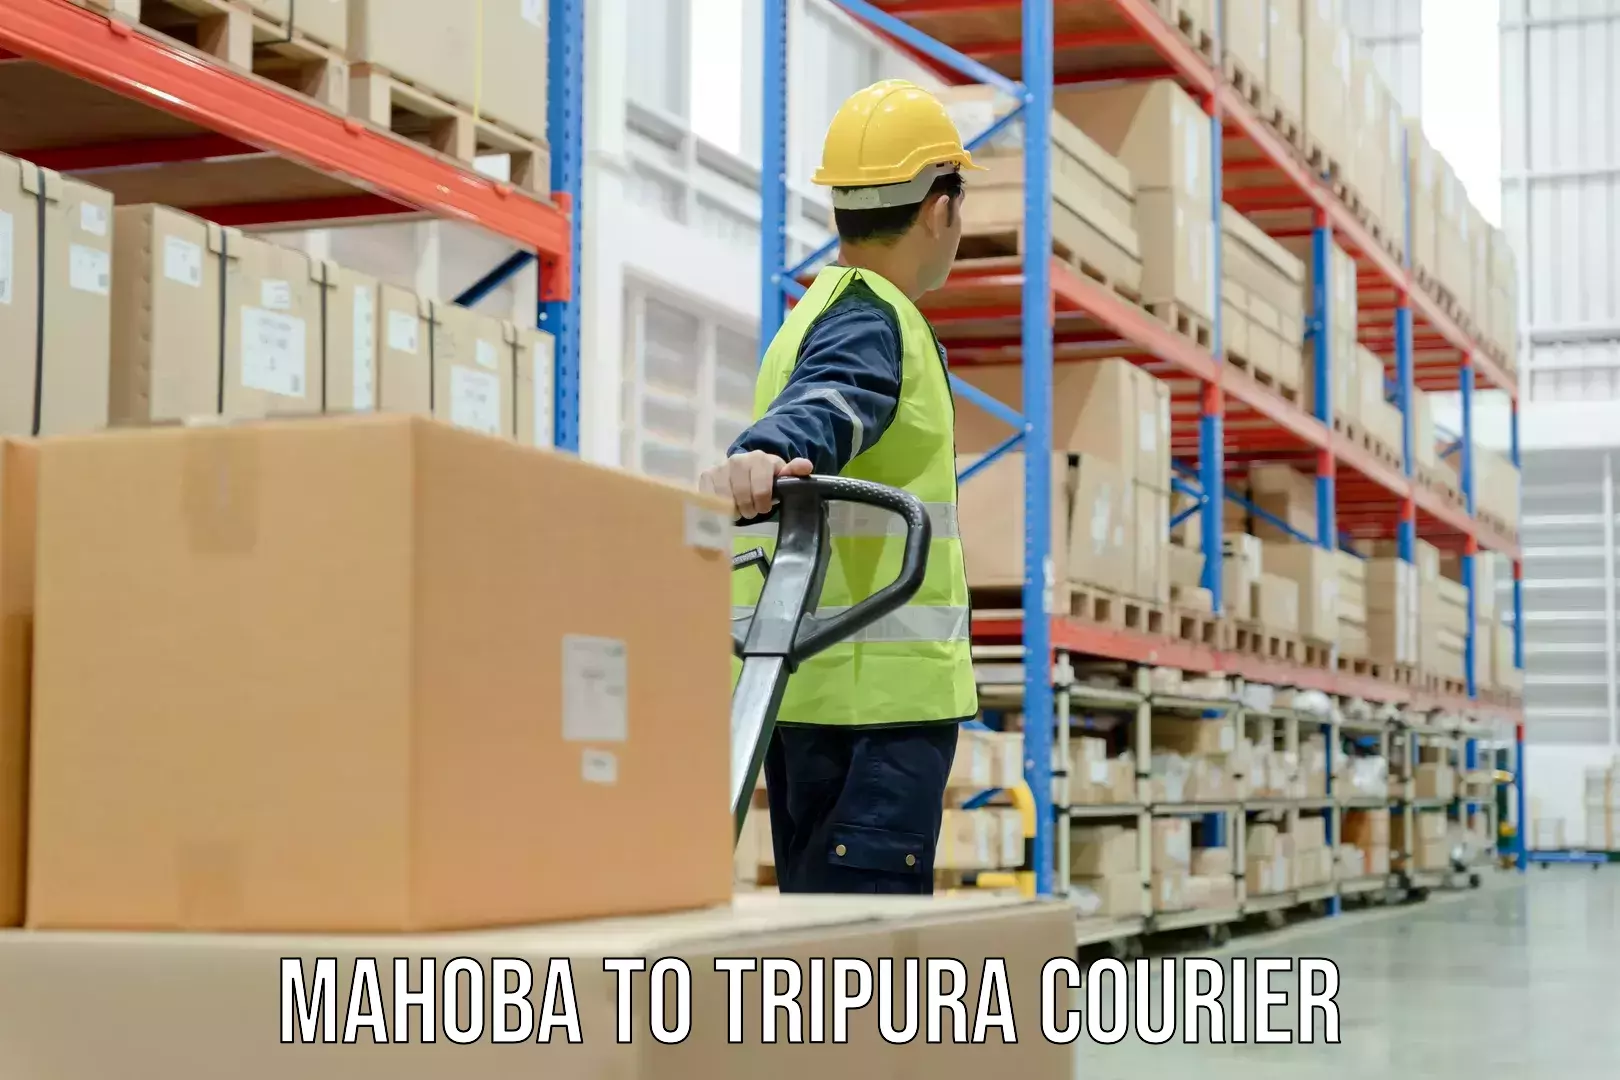 High-capacity parcel service Mahoba to Tripura